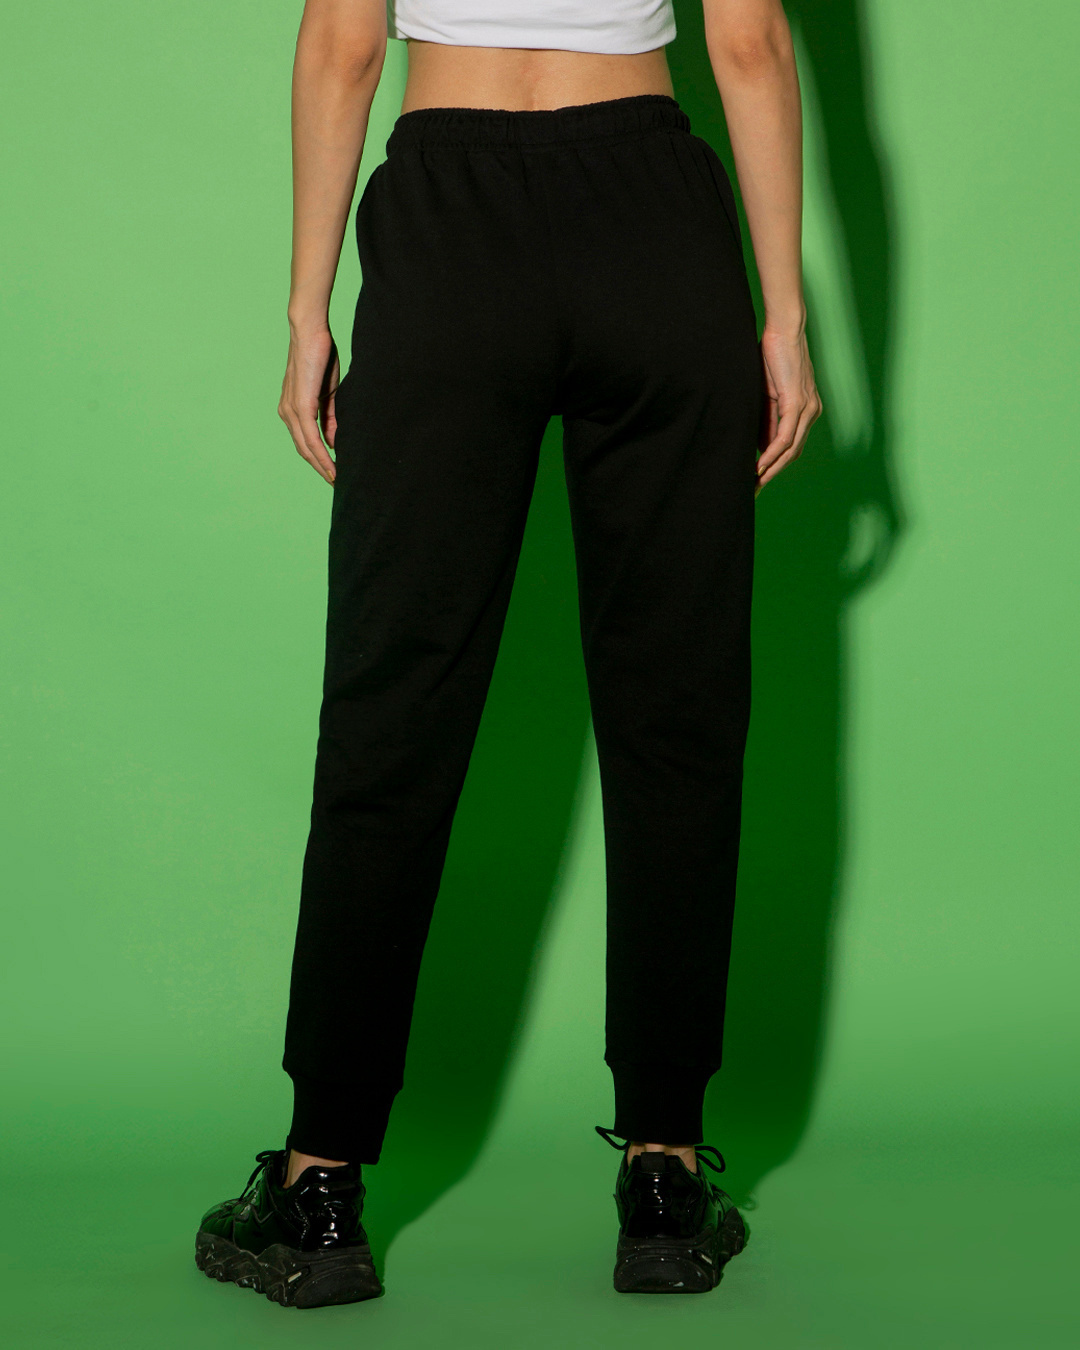 Buy Women's Black Slim Fit Joggers Online at Bewakoof